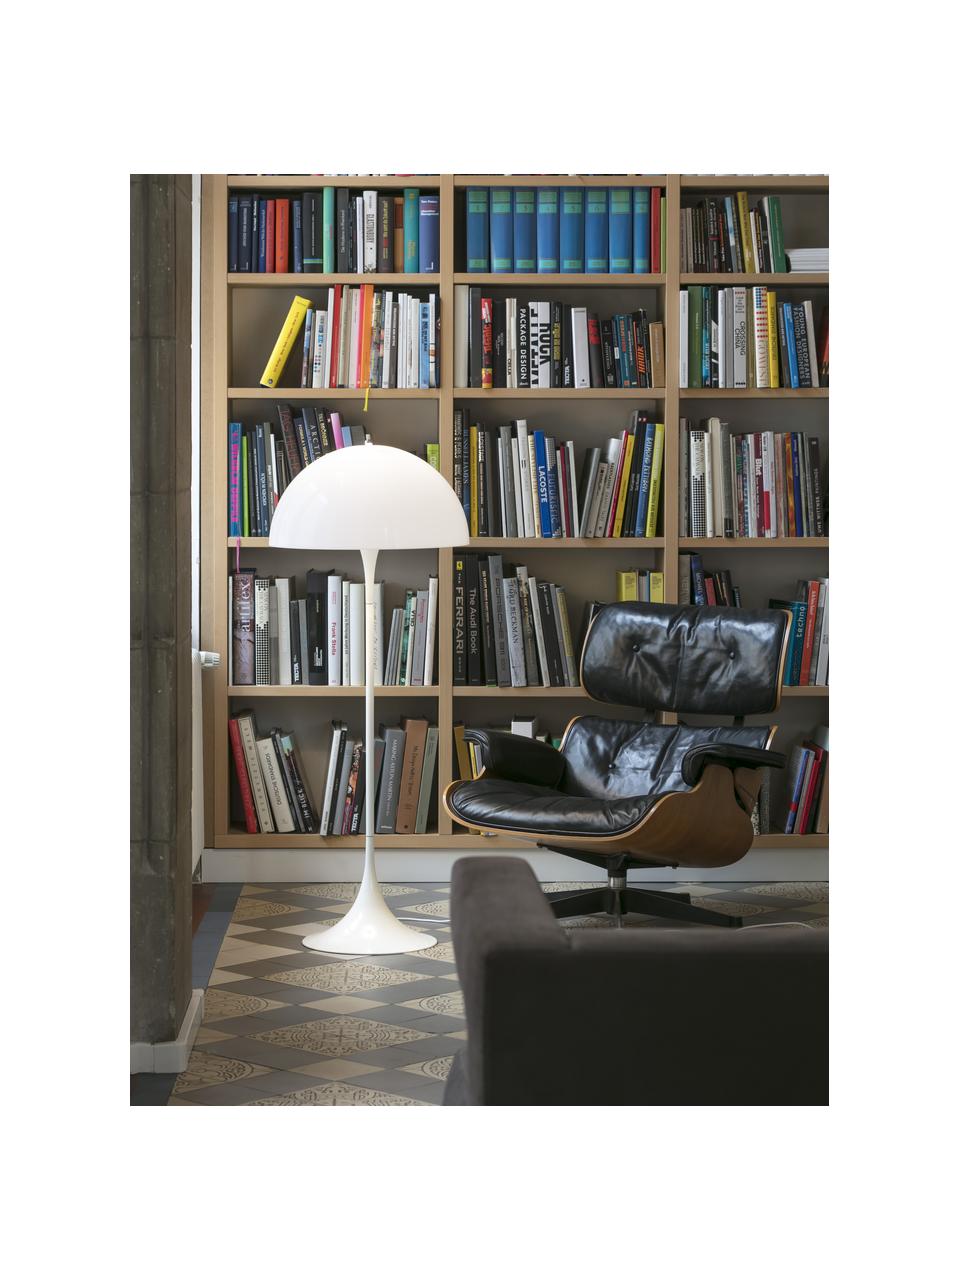 Kleine vloerlamp Panthella, Lampenkap: acrylglas, Wit, H 129 cm